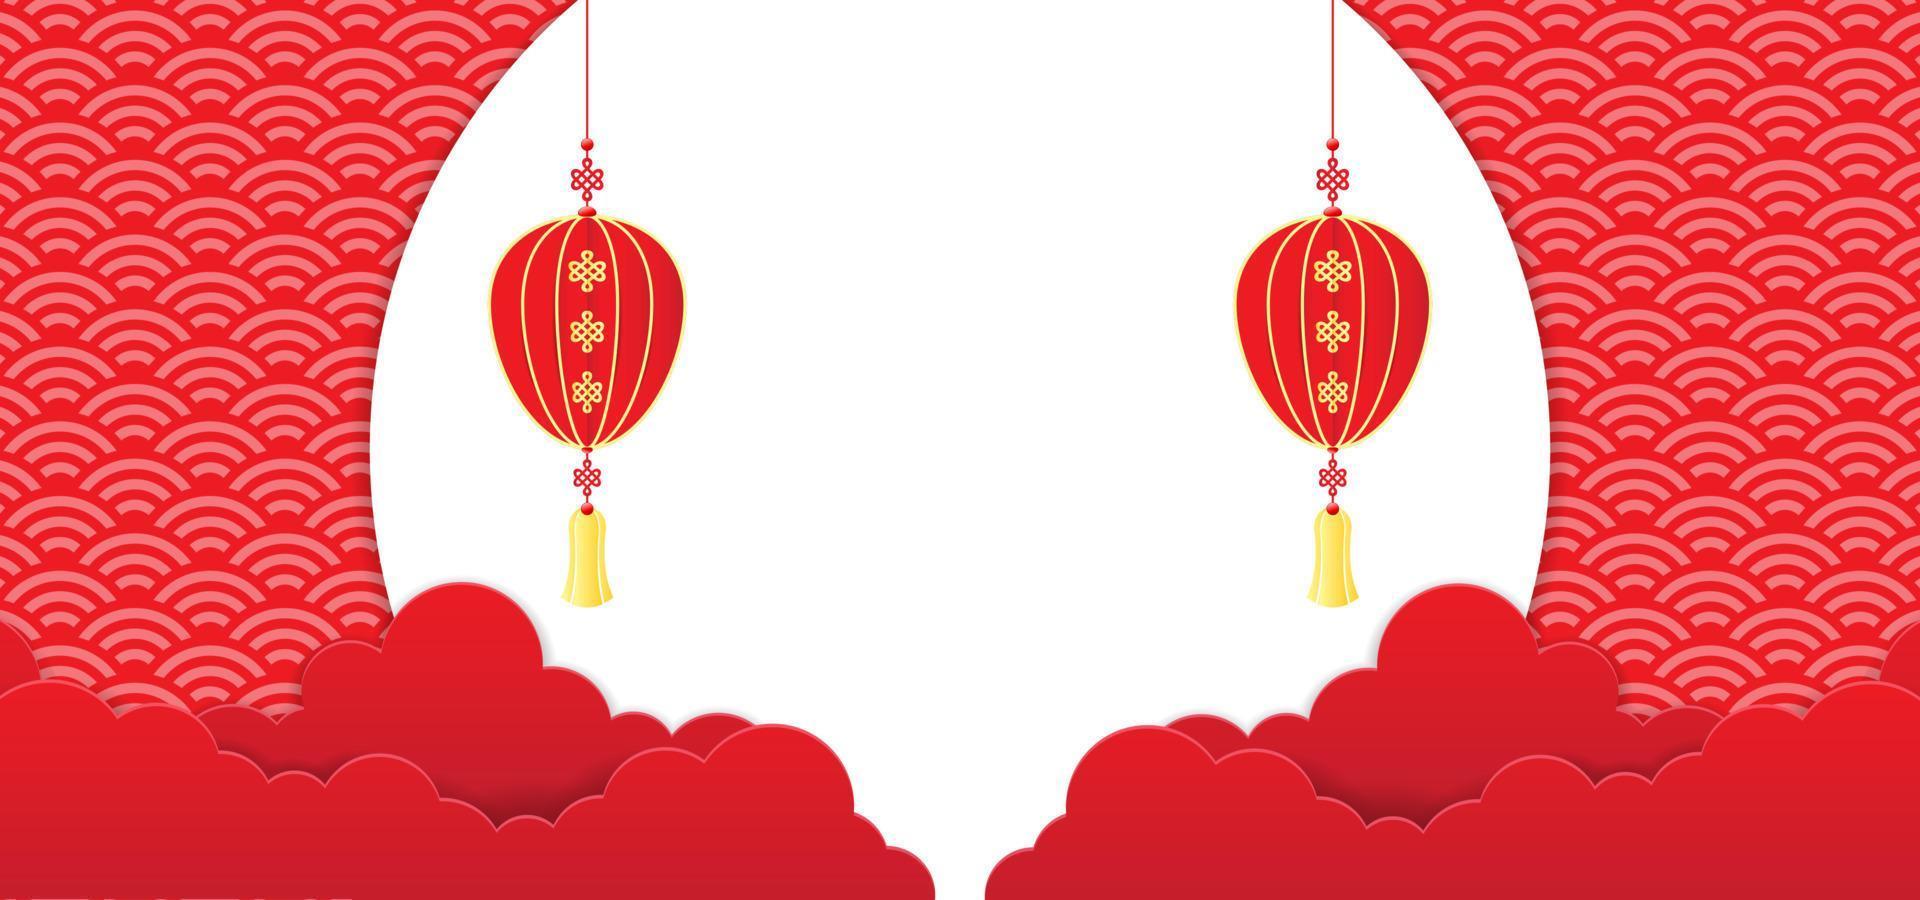 Màu đỏ và khoảng trống trắng là những yếu tố không thể thiếu trong nền tảng Tết Trung Quốc. Hãy khám phá nền tảng Nguyên đán này với các thiết kế độc đáo, mang đến không gian Tết đầy phong cách và ấn tượng.